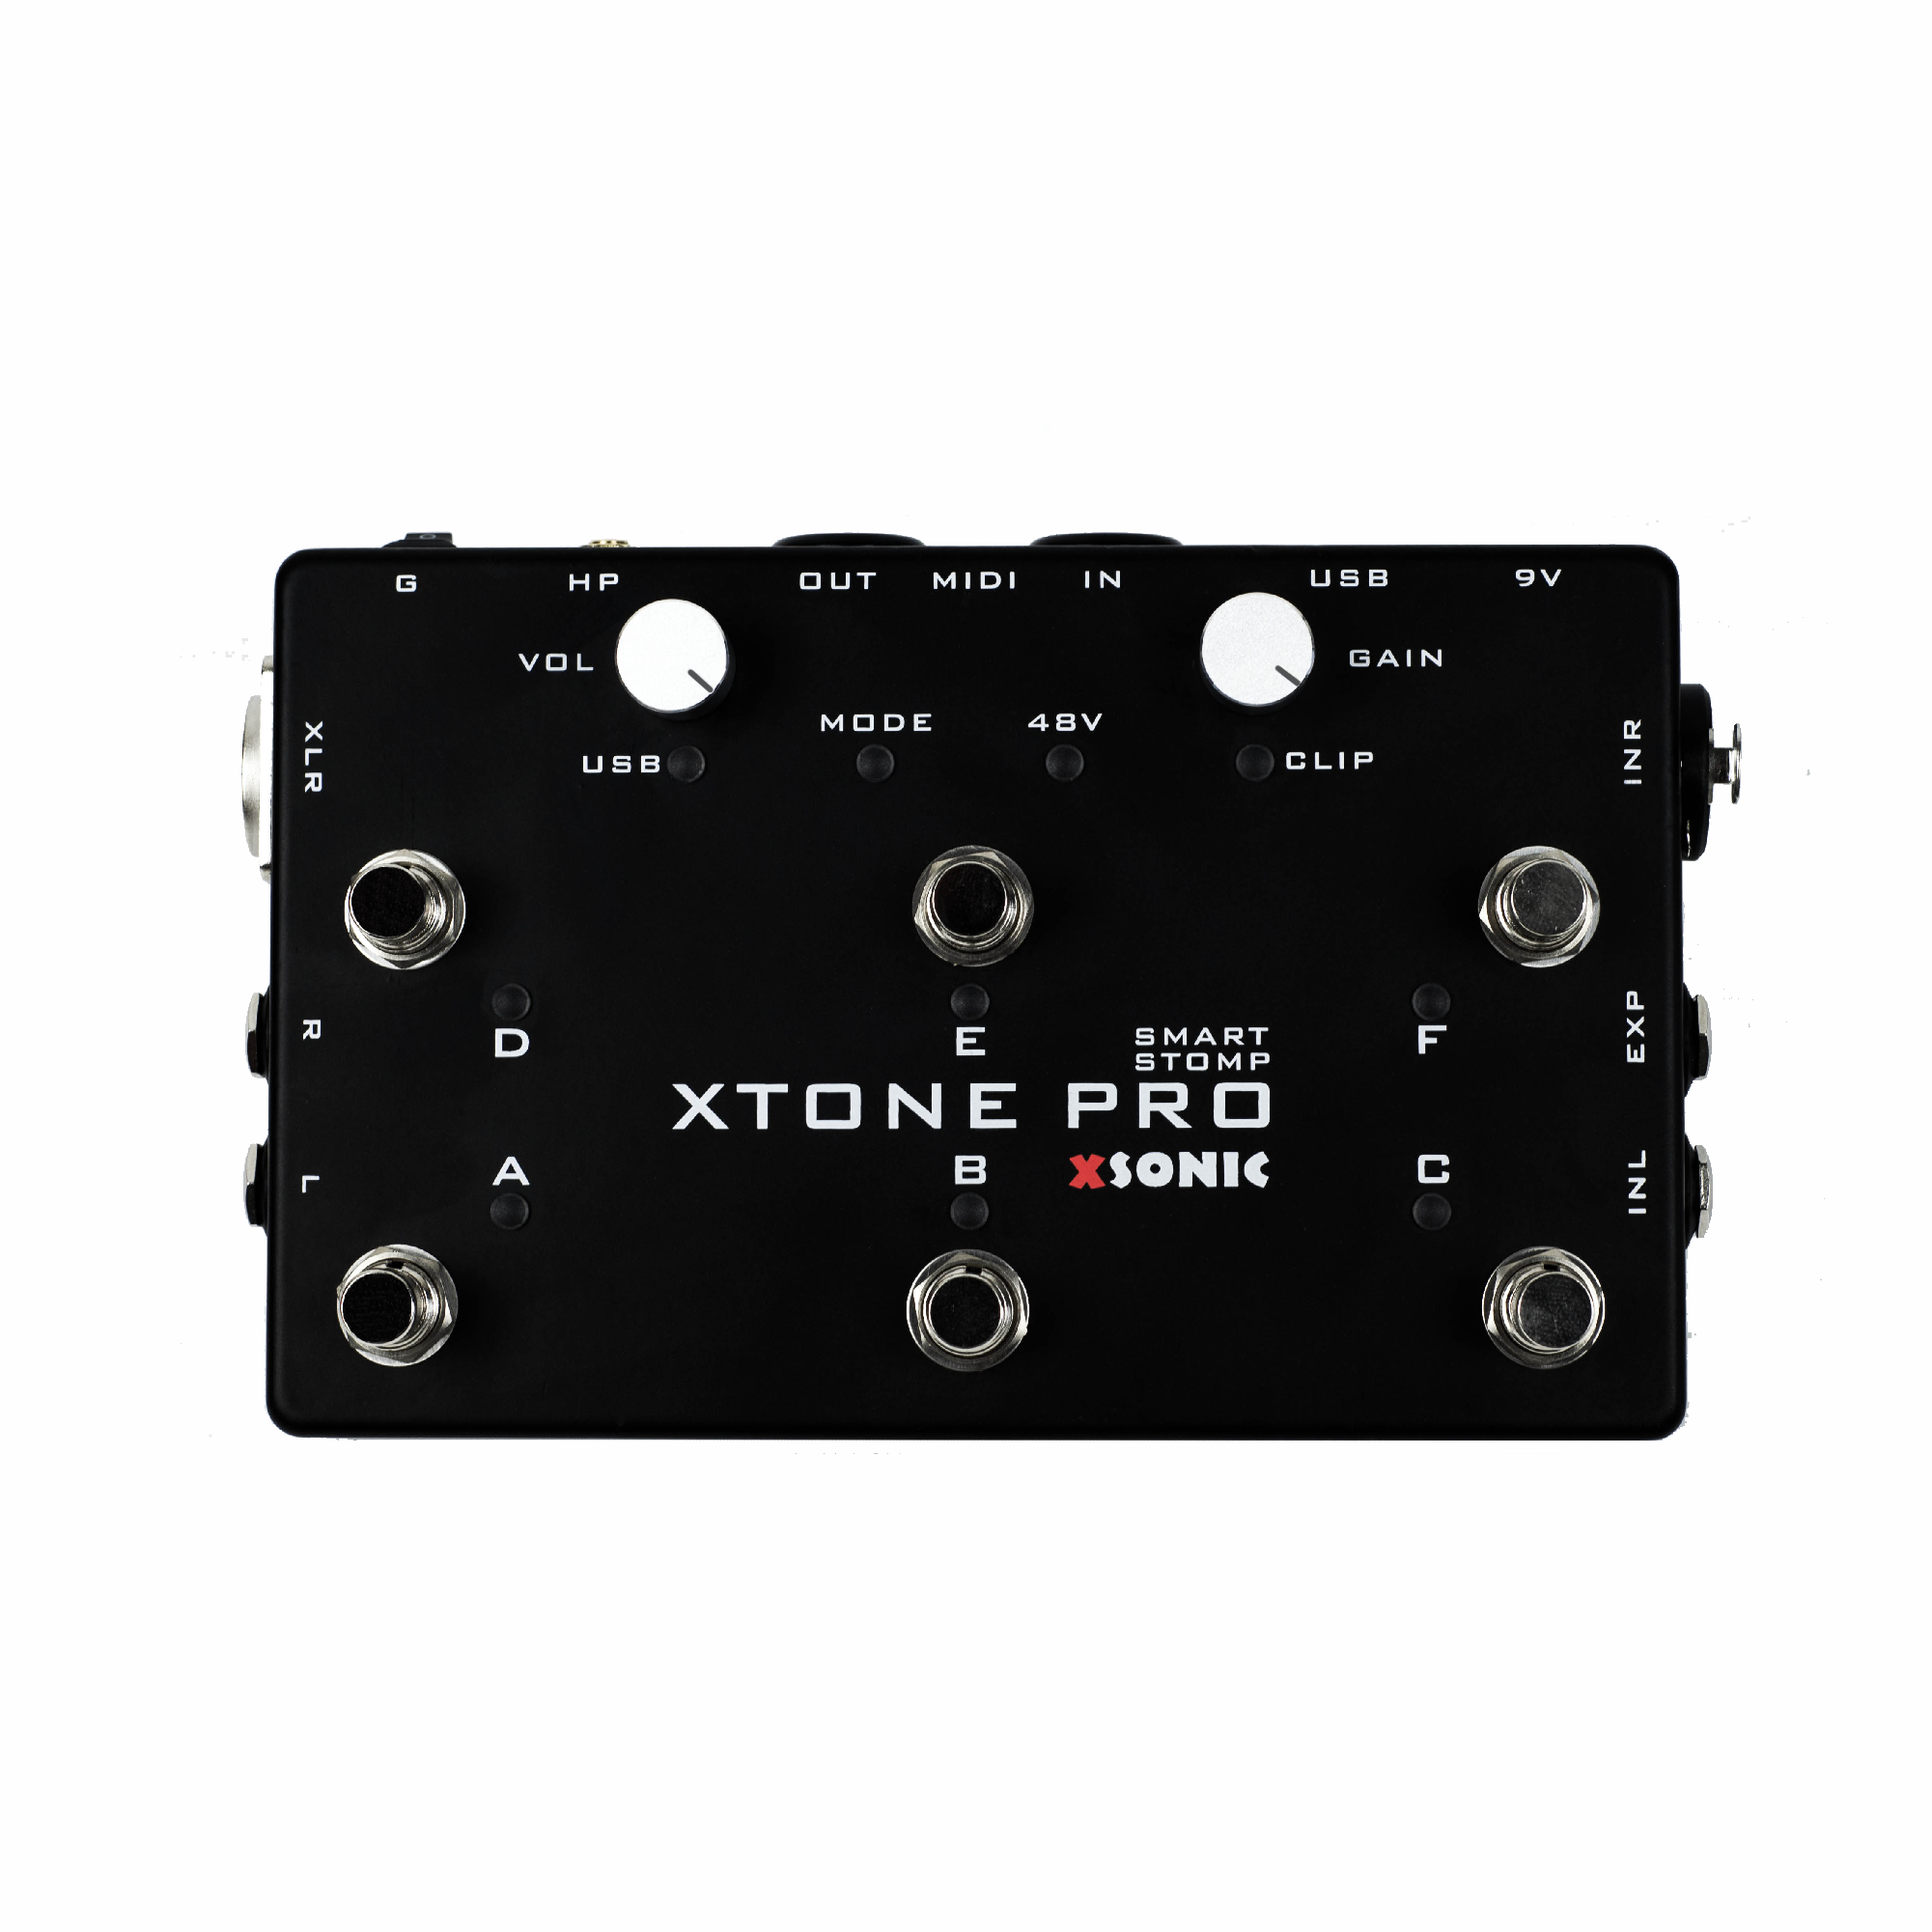 [B-Stock] XTONE Pro | Professional Smart Audio Interface